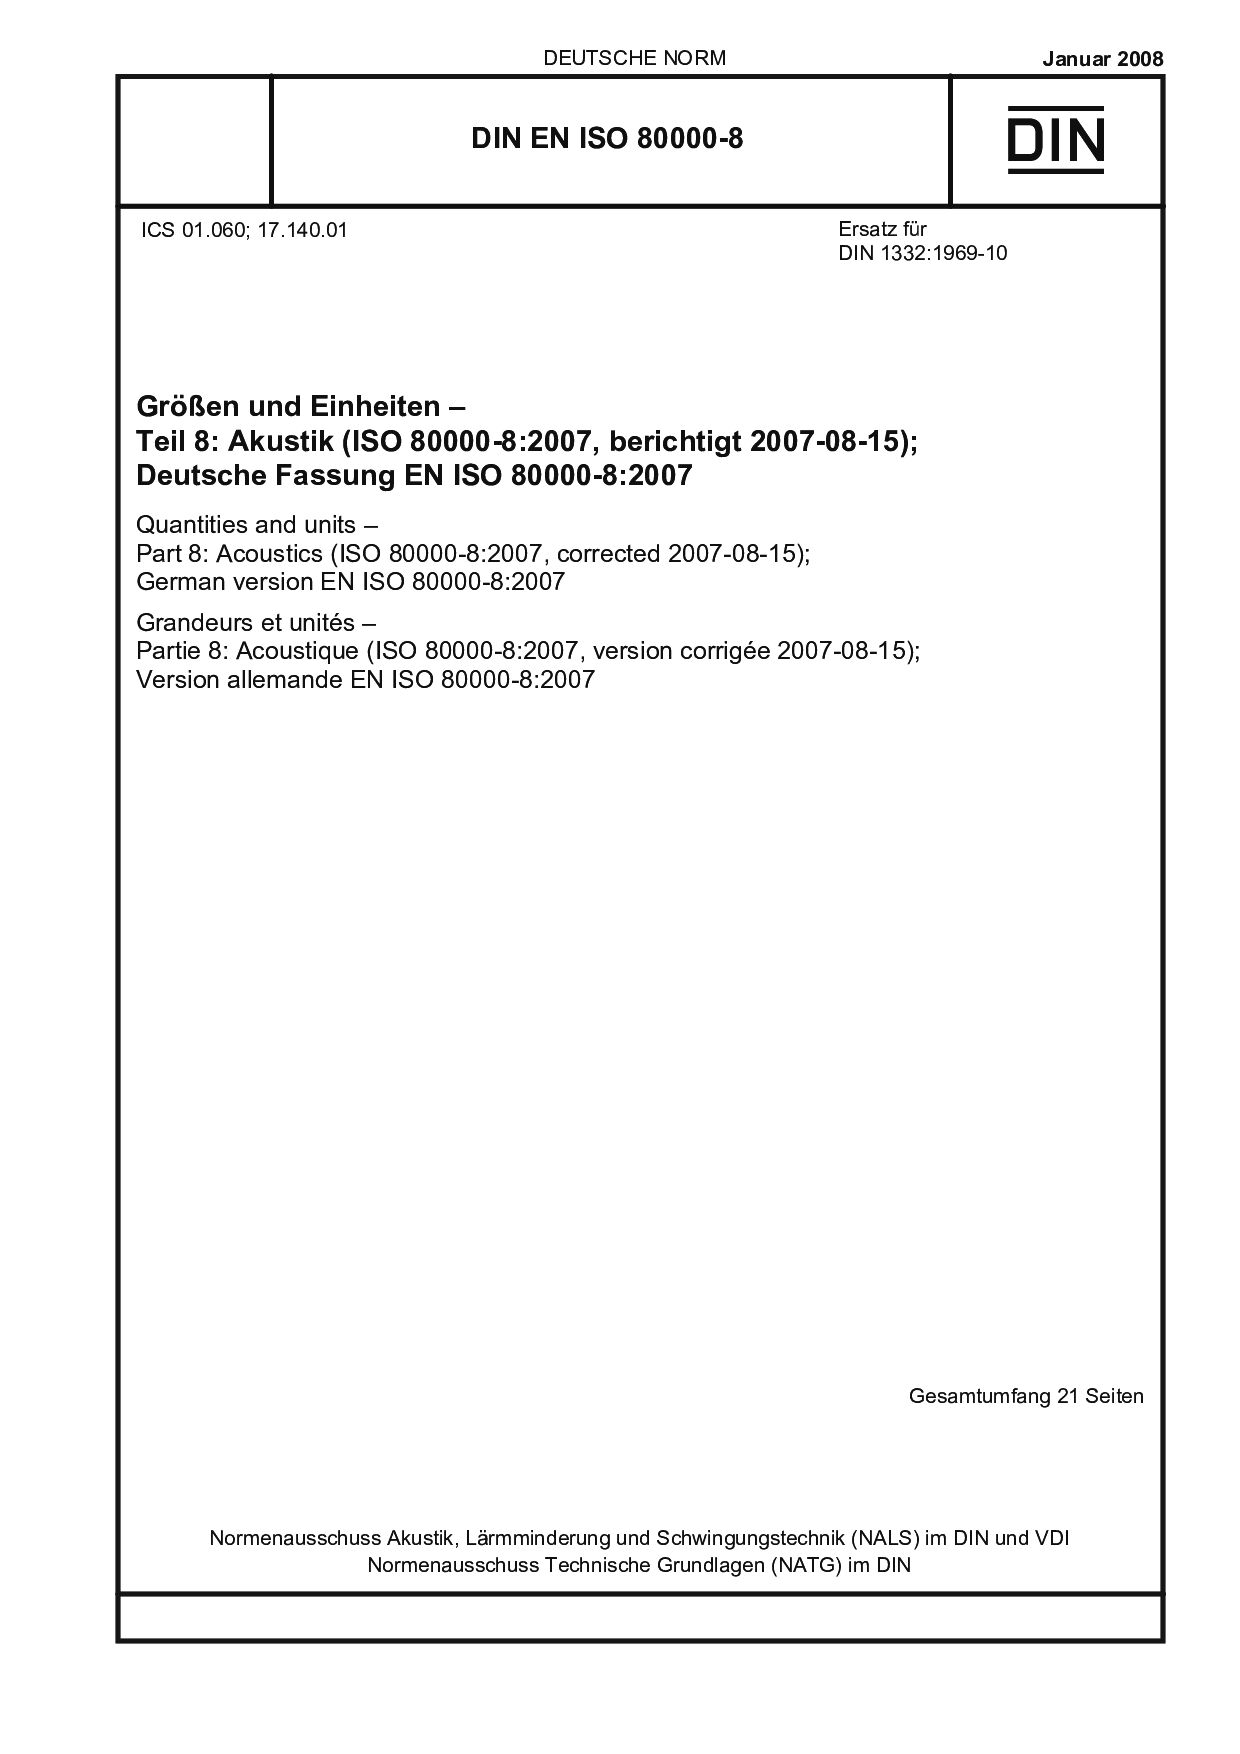 DIN EN ISO 80000-8:2008